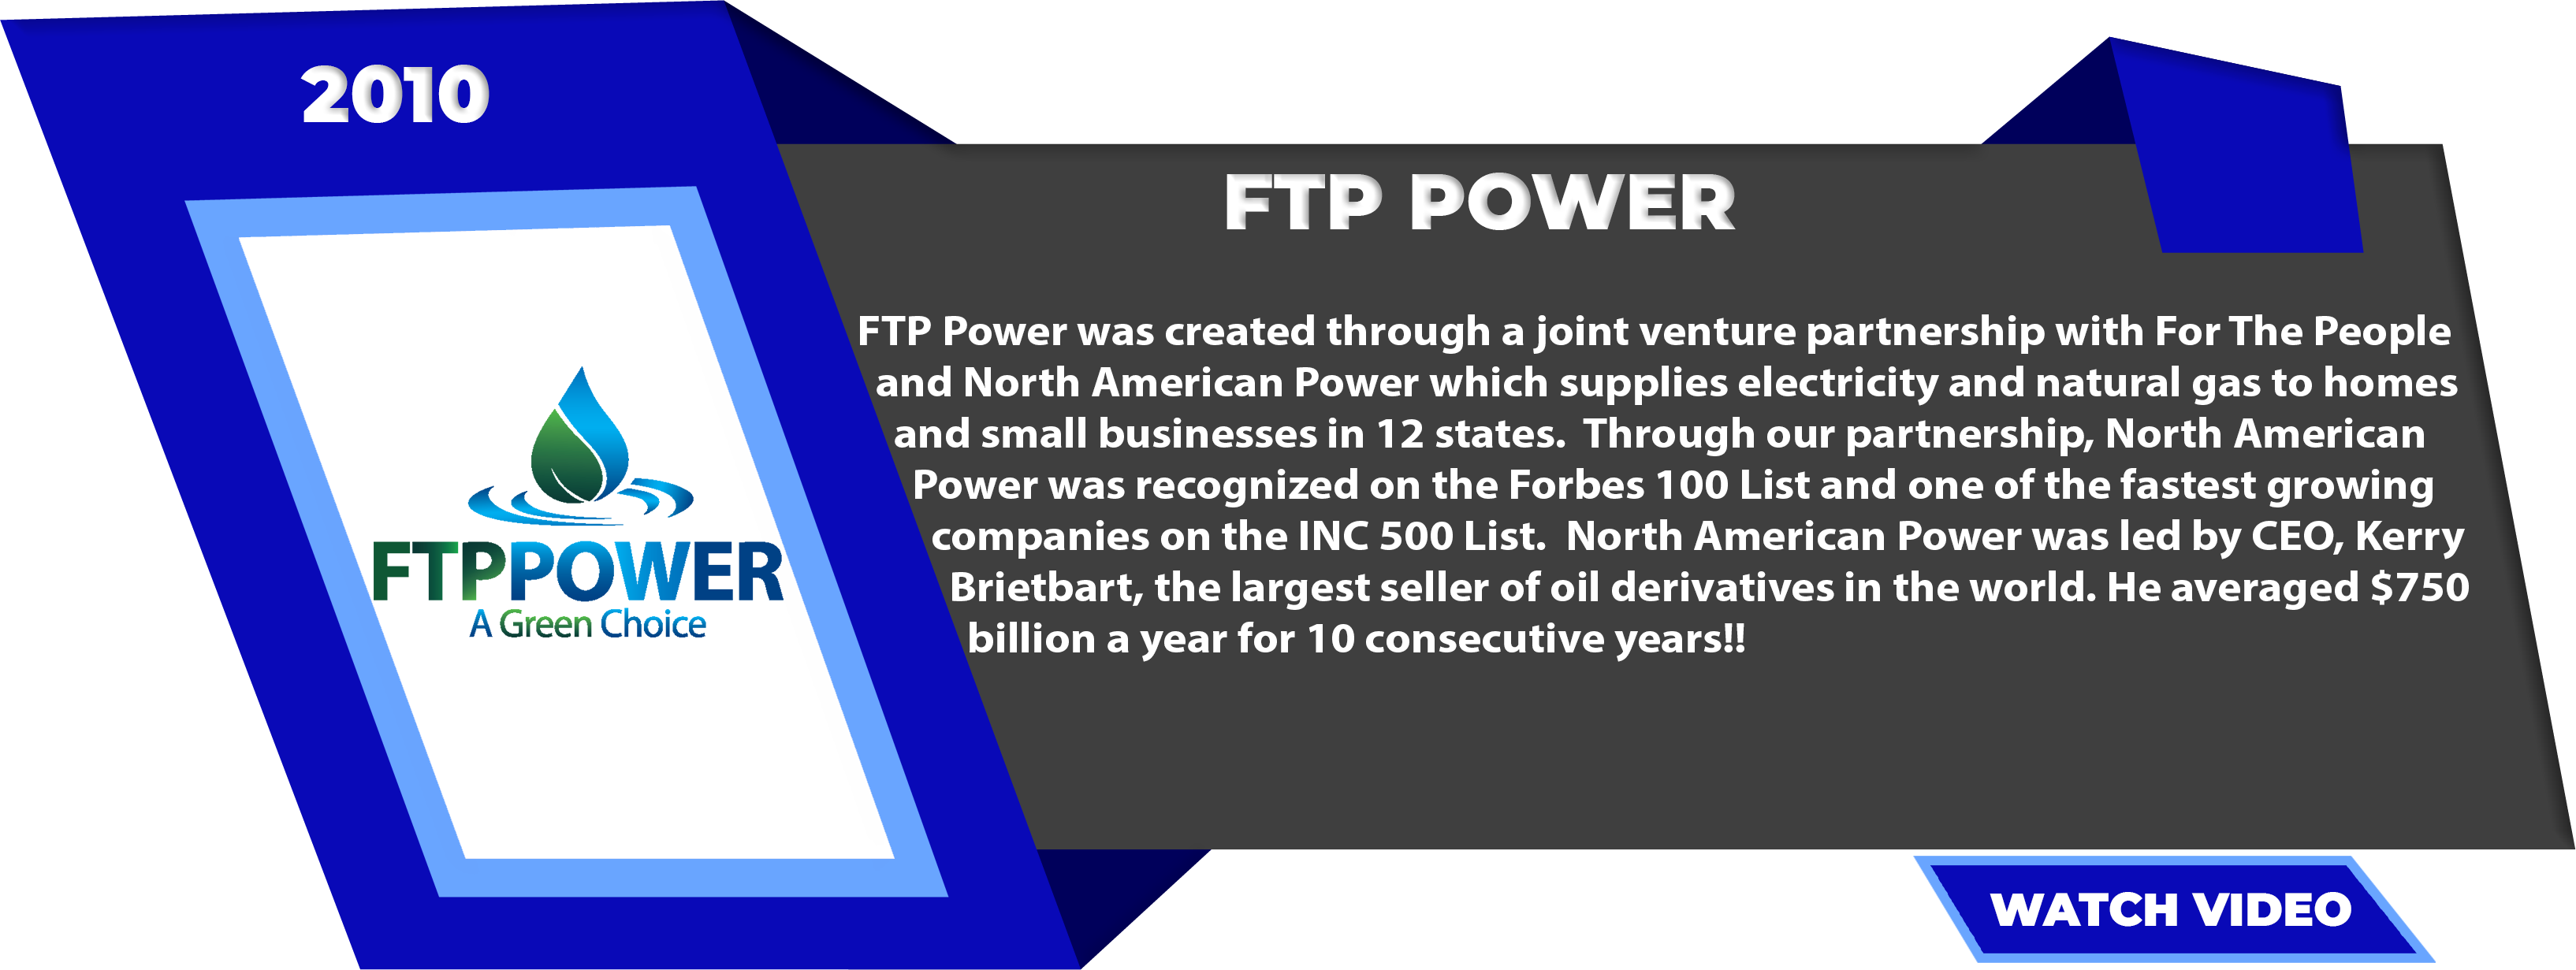 FTP-Power-2010-2013-1